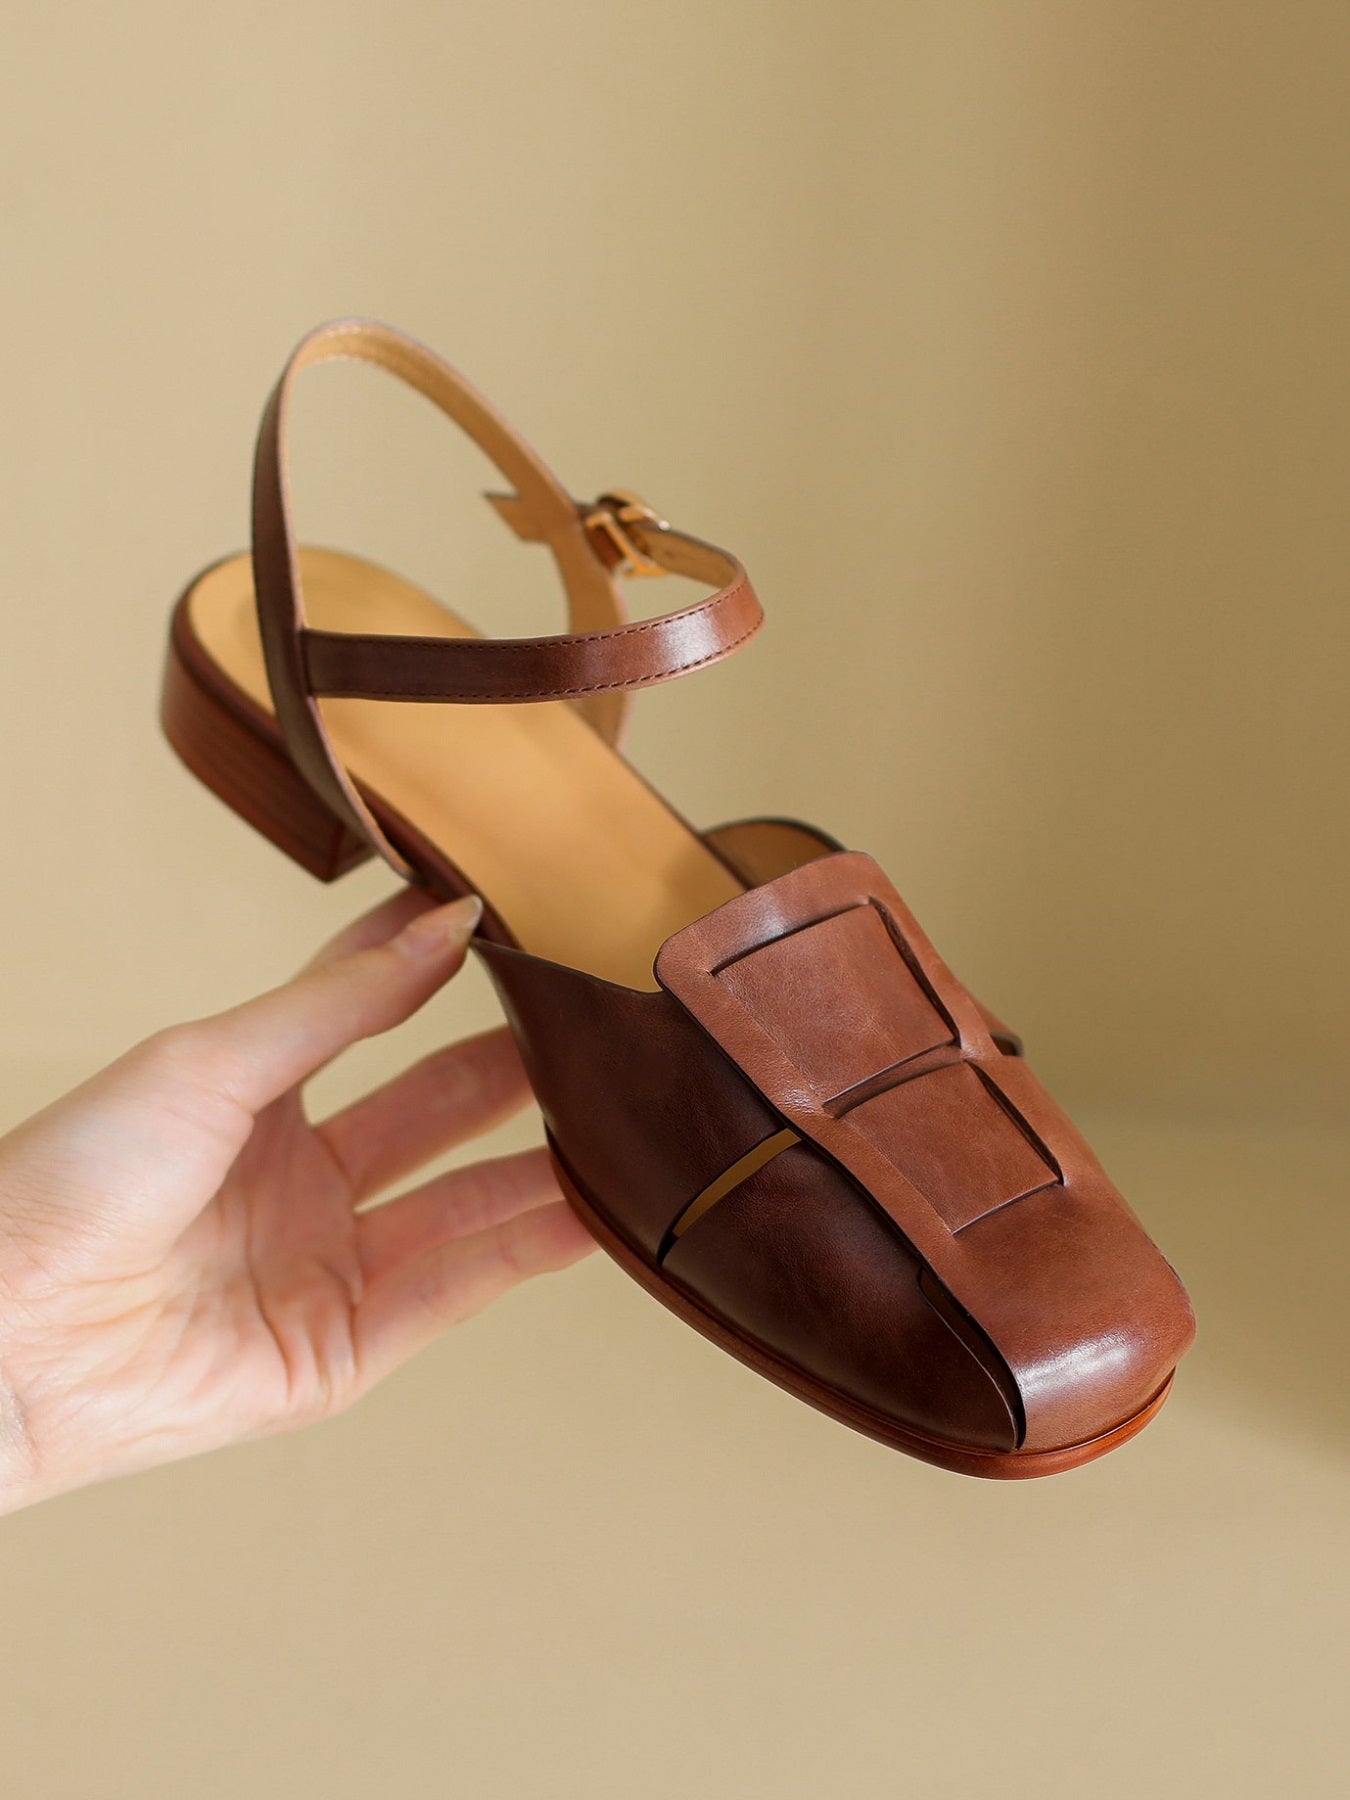 Cognac Leather Sandals - Ankle Strap Sandals - Toe-Loop Sandal - Lulus